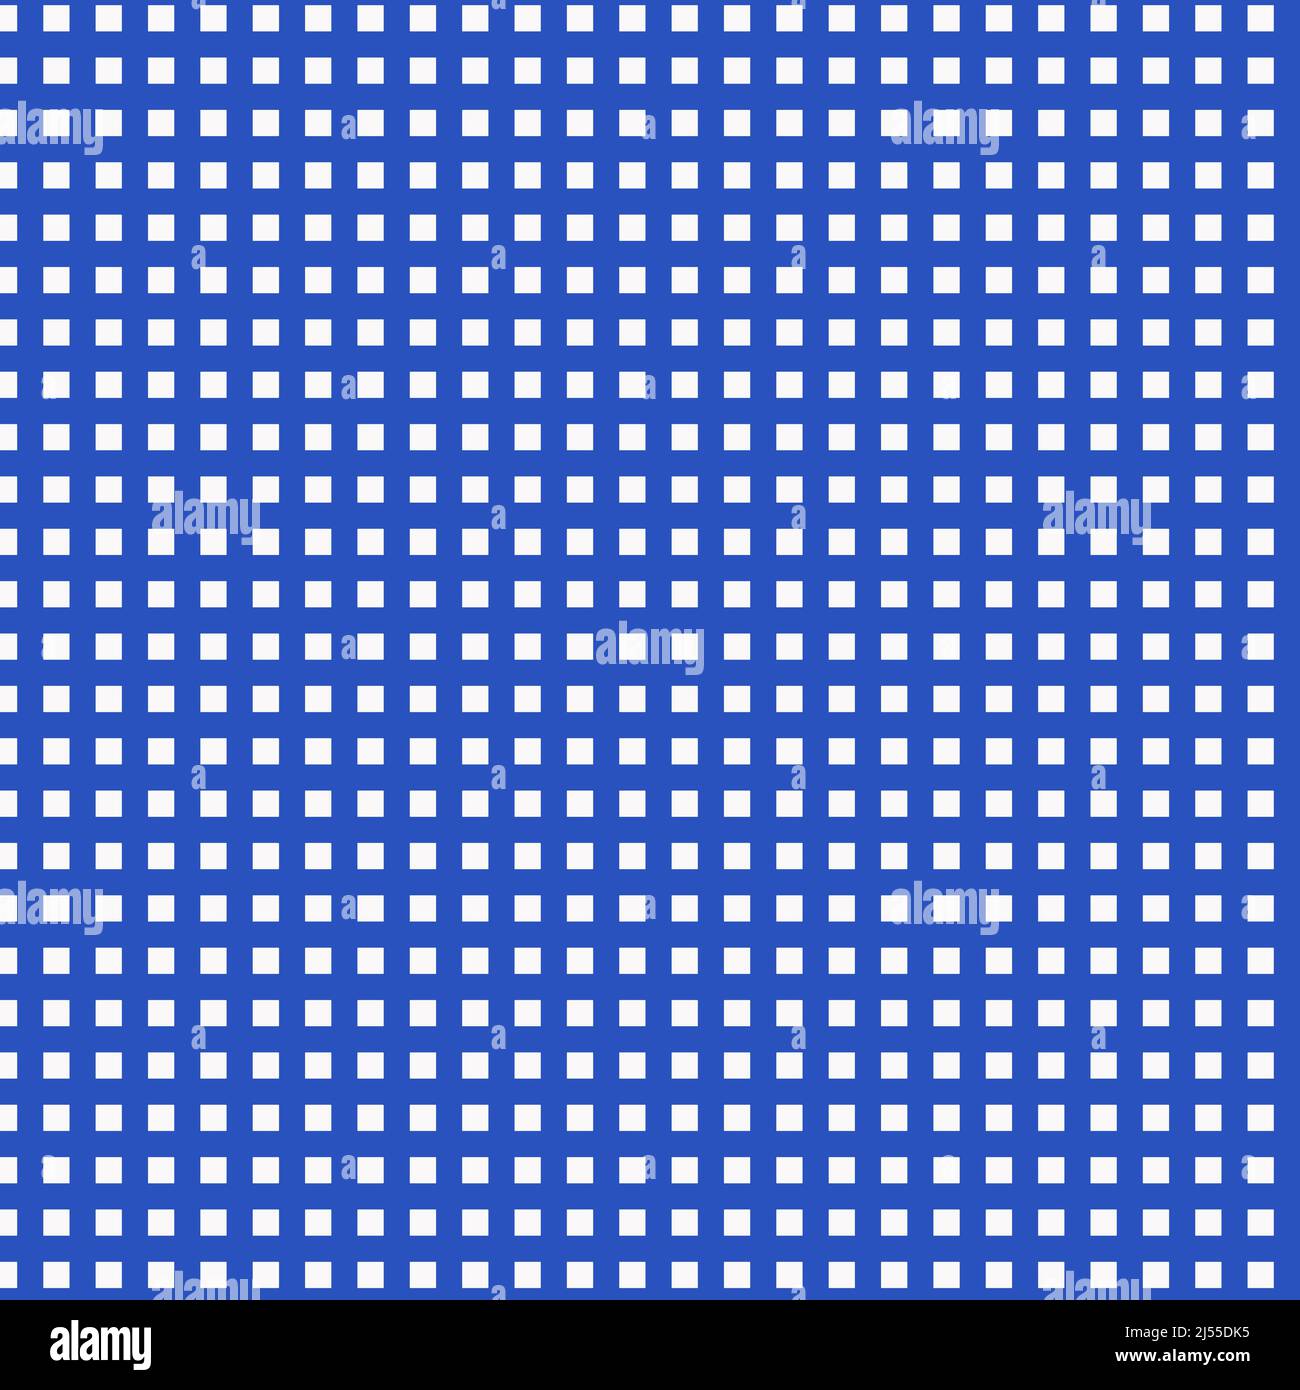 Blau-weiße Hintergründe mit Cerulean-Gingham-Muster in 12x12-Designelementen für Hintergründe und Seitenelemente. Stockfoto